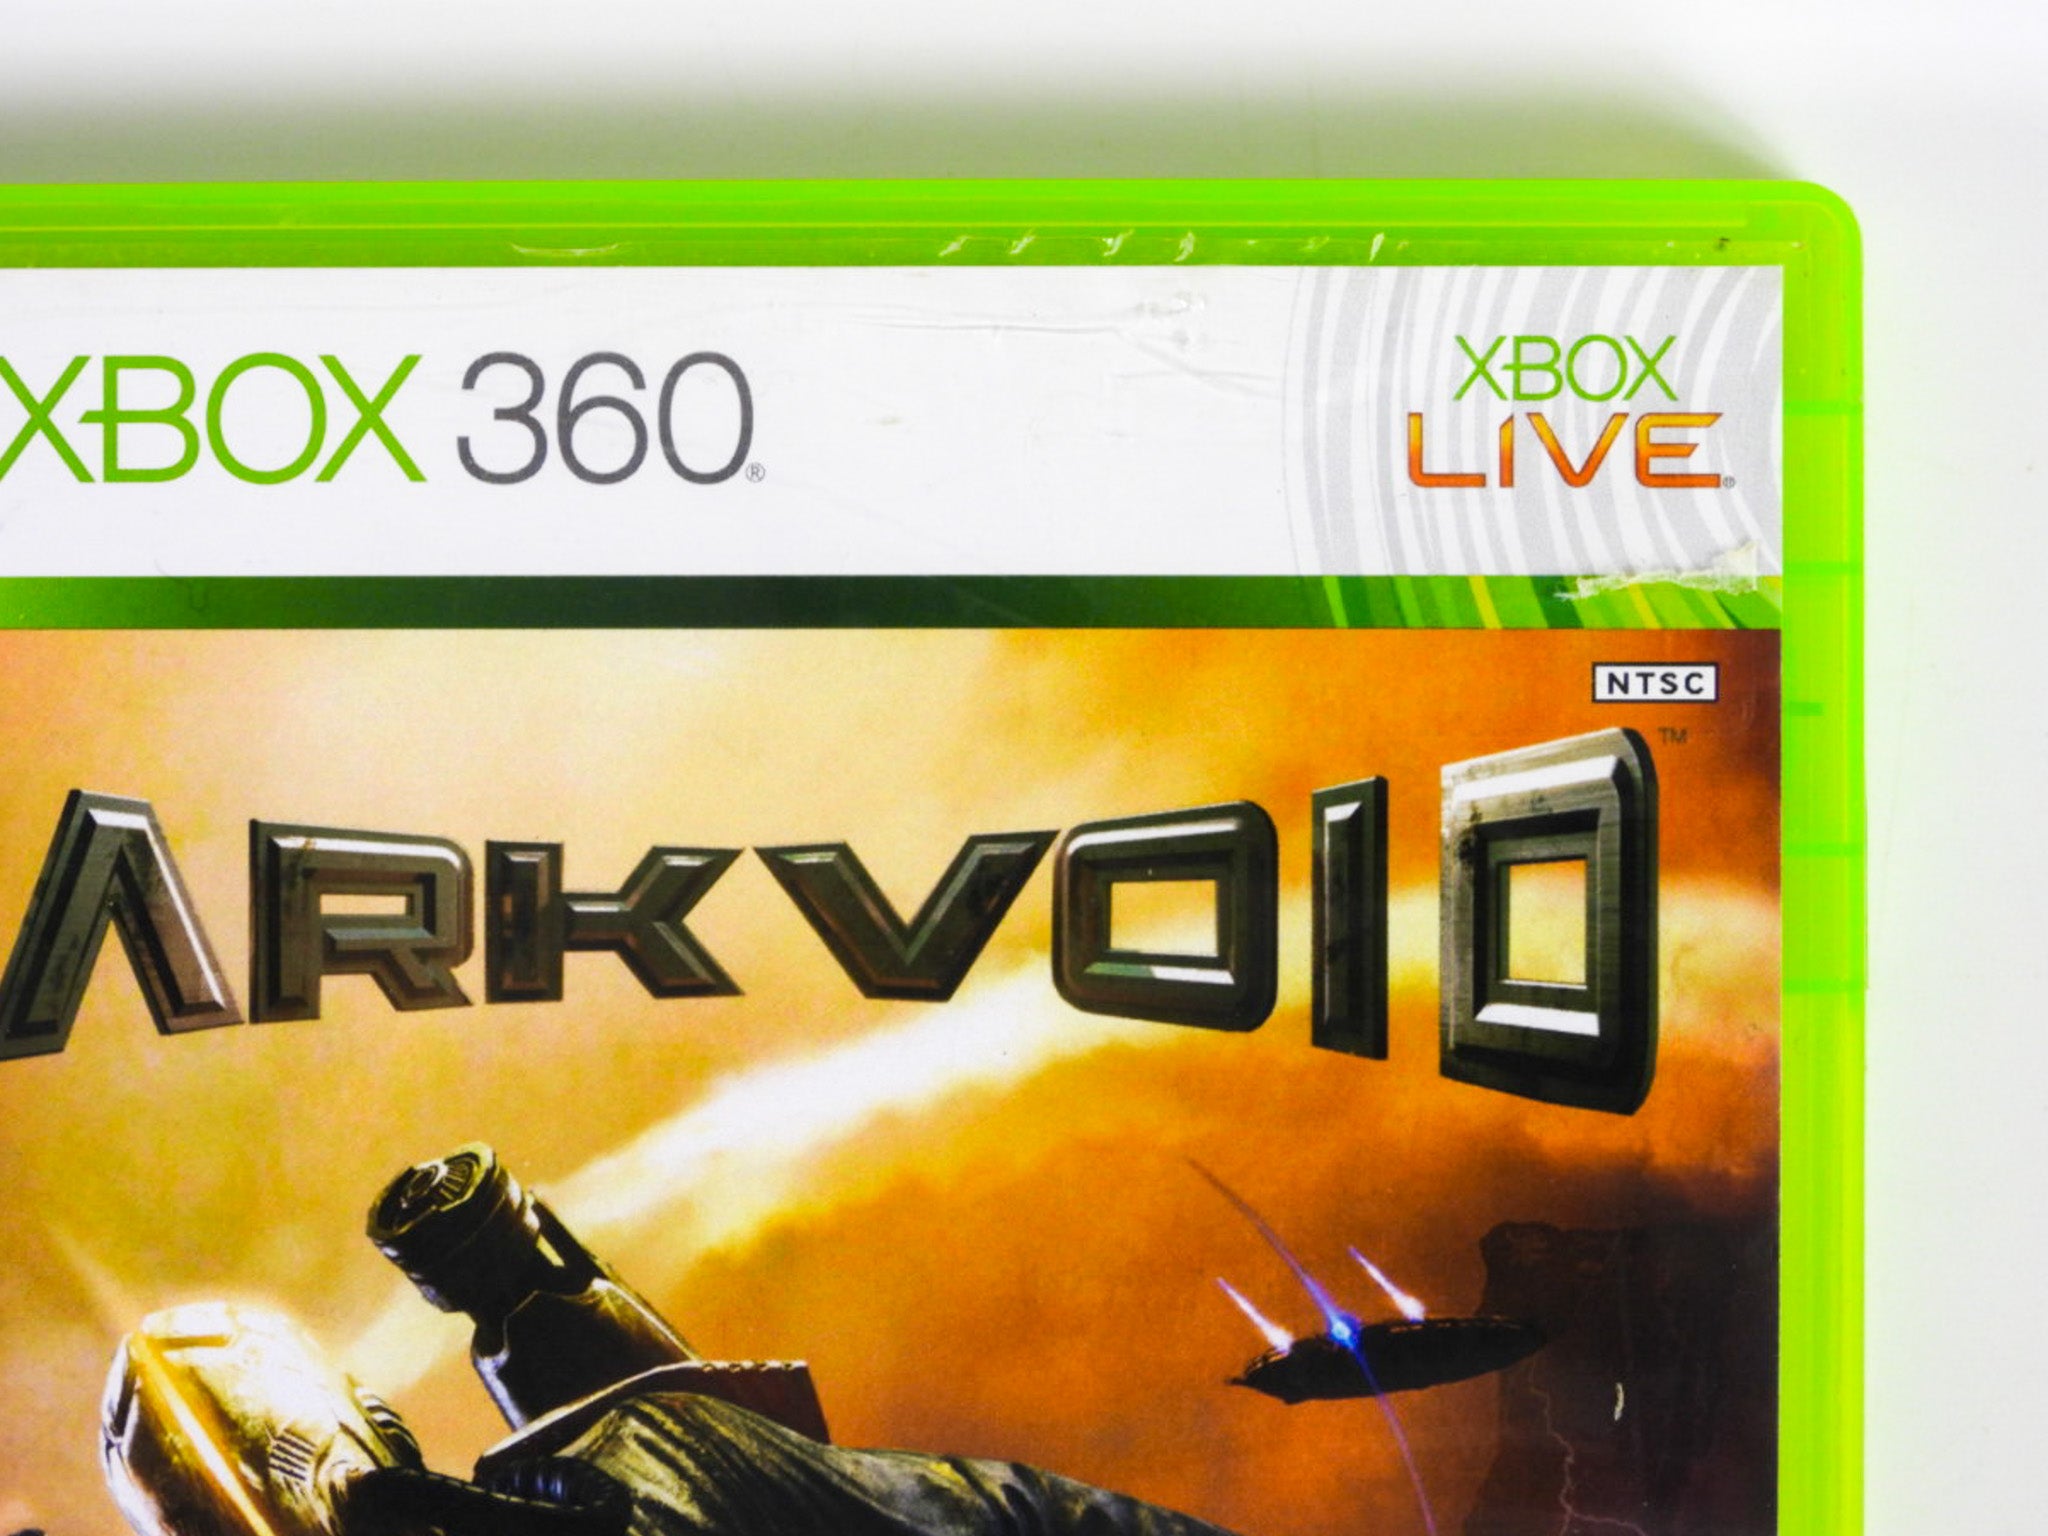 Dark Void - Xbox 360